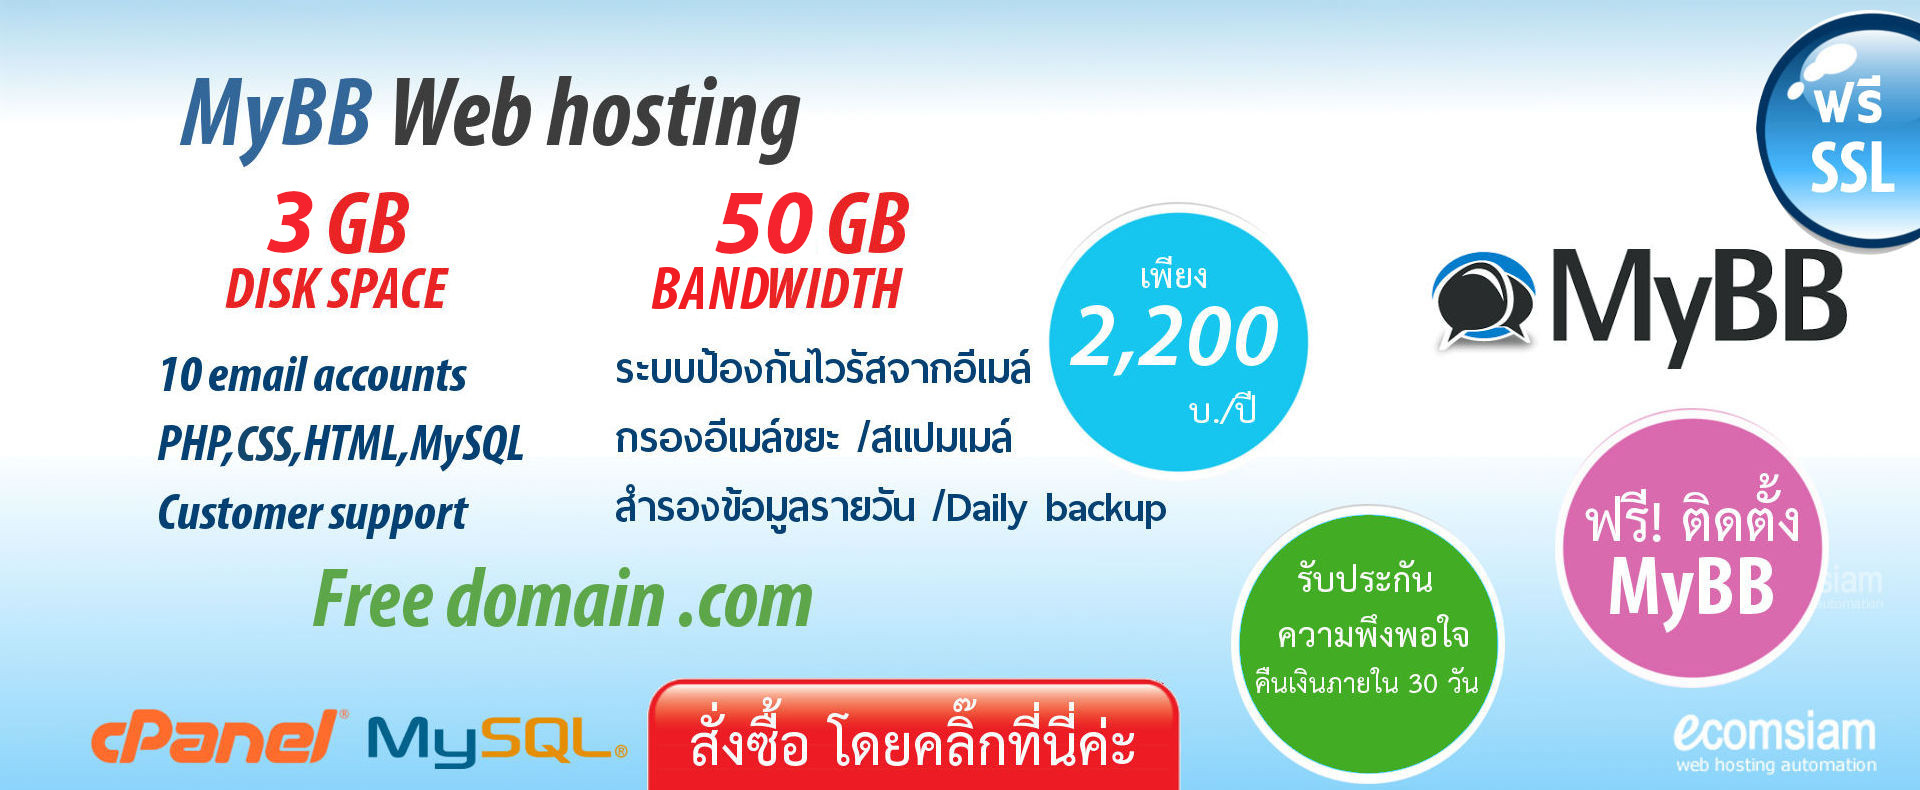 แนะนำ MyBB web hosting thailand เพียง 2,200 บ./ปี เว็บโฮสติ้งไทย ฟรี โดเมน ฟรี SSL ฟรีติดตั้ง แนะนำเว็บโฮสติ้ง บริการลูกค้า  Support ดูแลดี โดย webhosting.com.co.th - MyBB web hosting thailand free domain